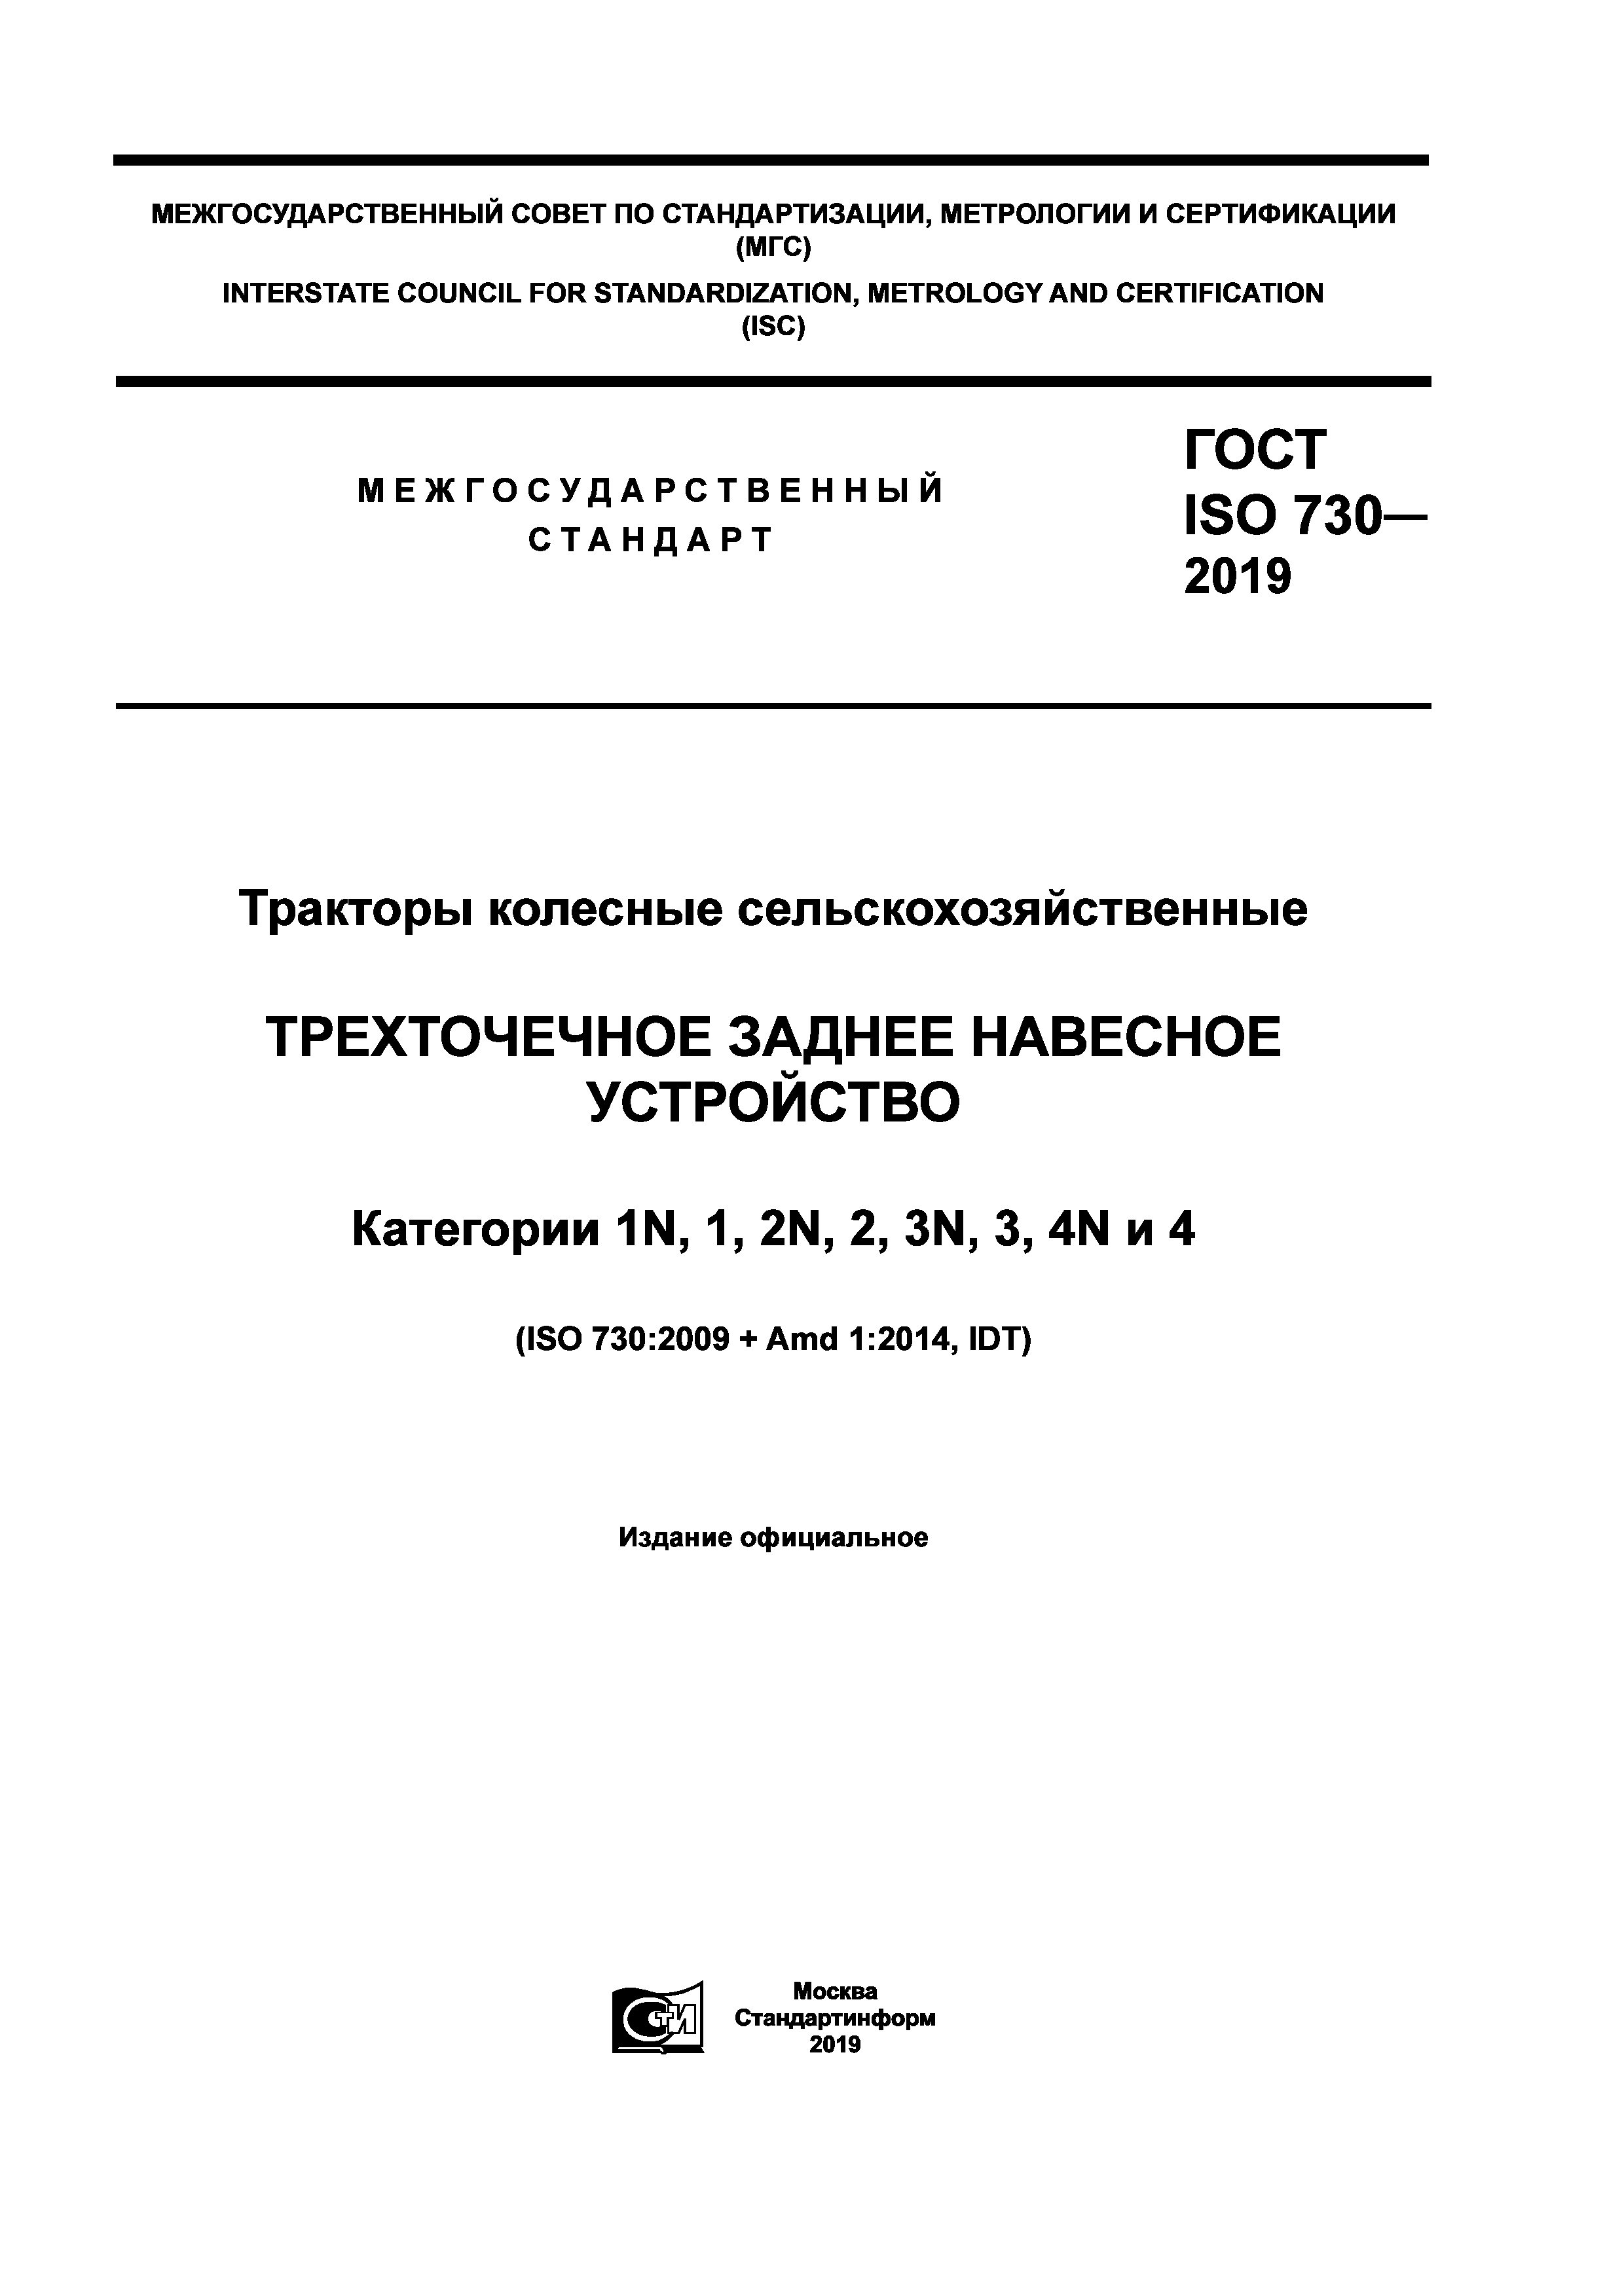 ГОСТ ISO 730-2019